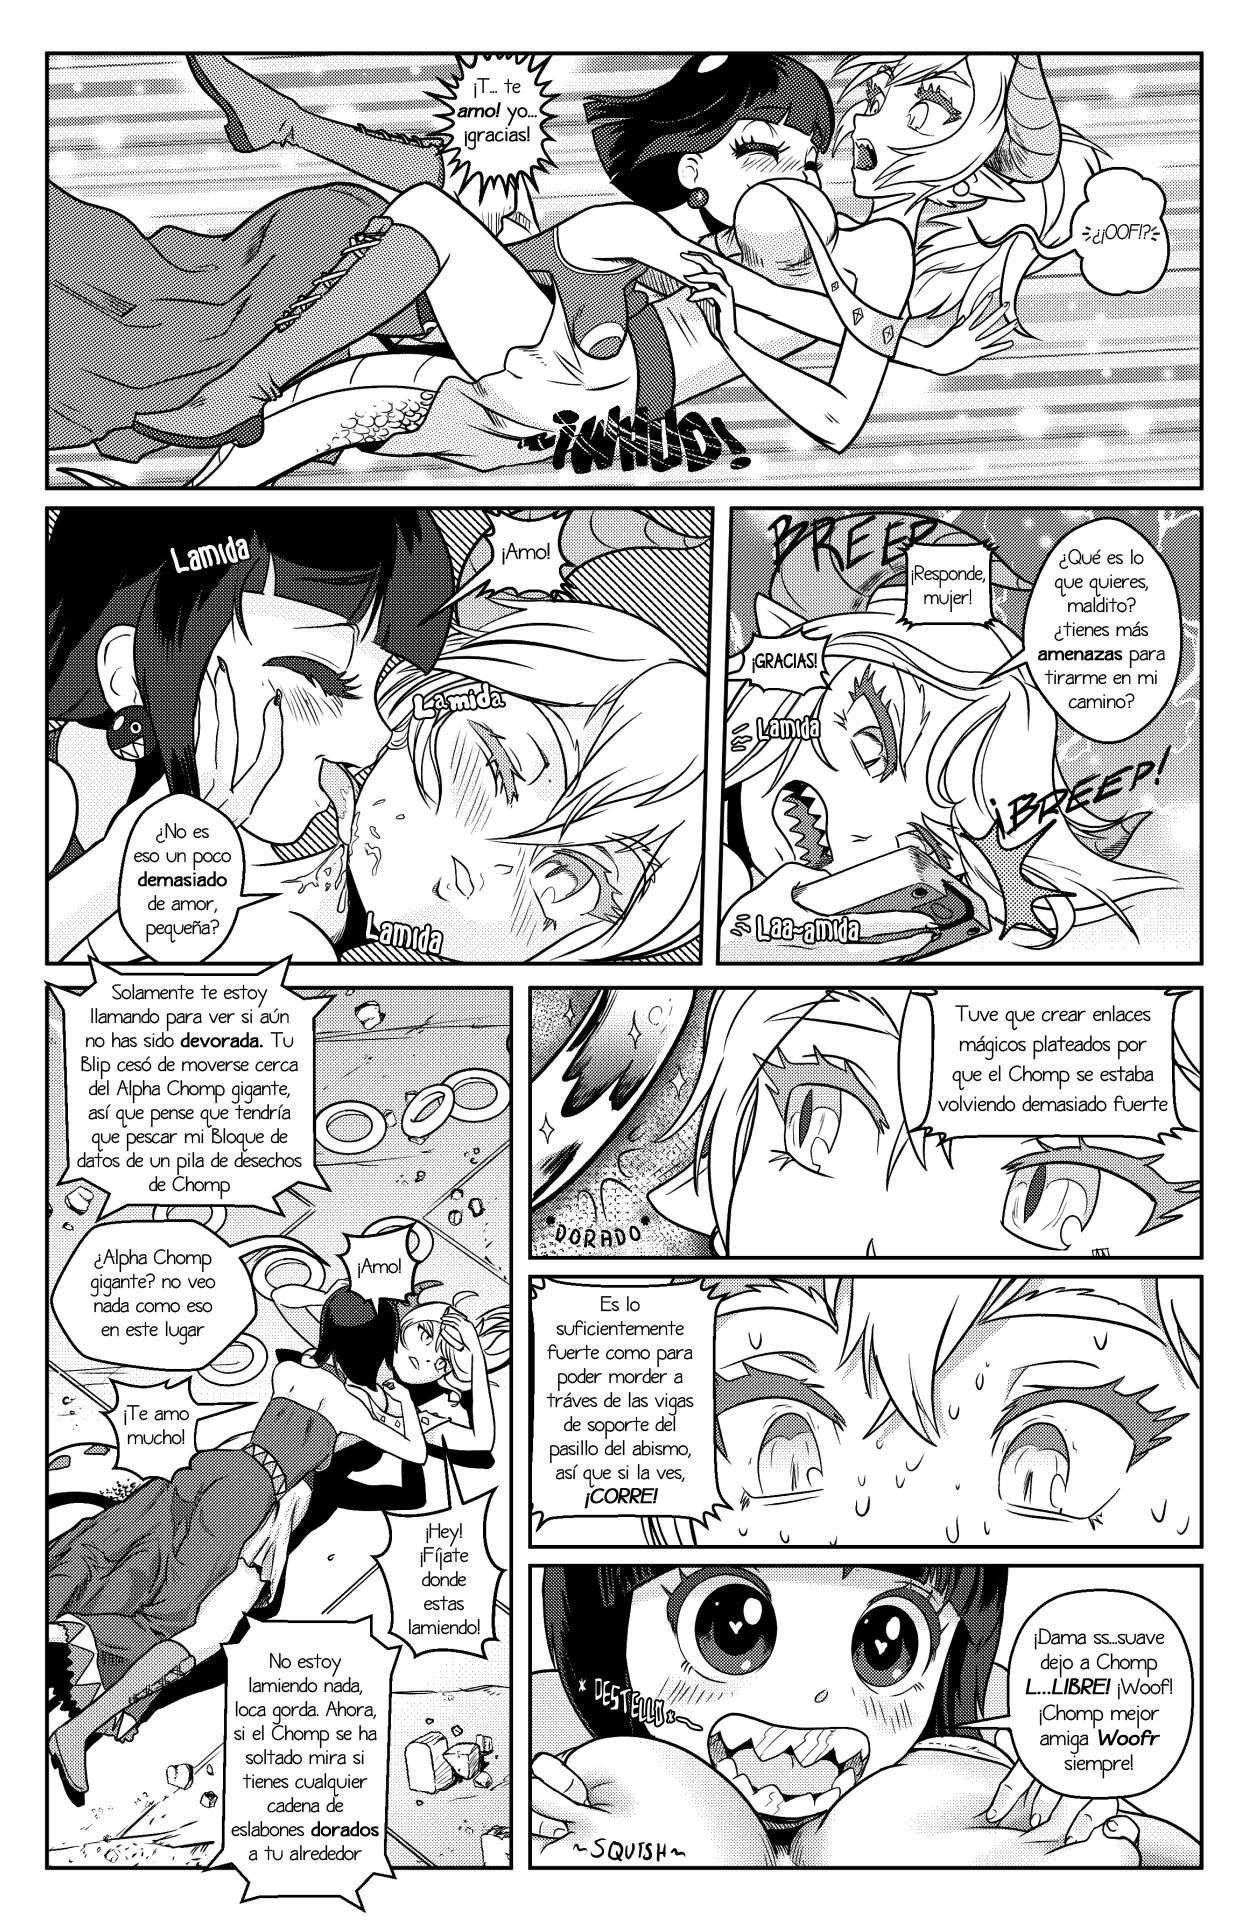 [Pencils] Bowsette Saga Vol.1 Y Vol.2 Completos - Vol.3 En Progreso (Mario Bros.) [Spanish] by Arkoniusx 38